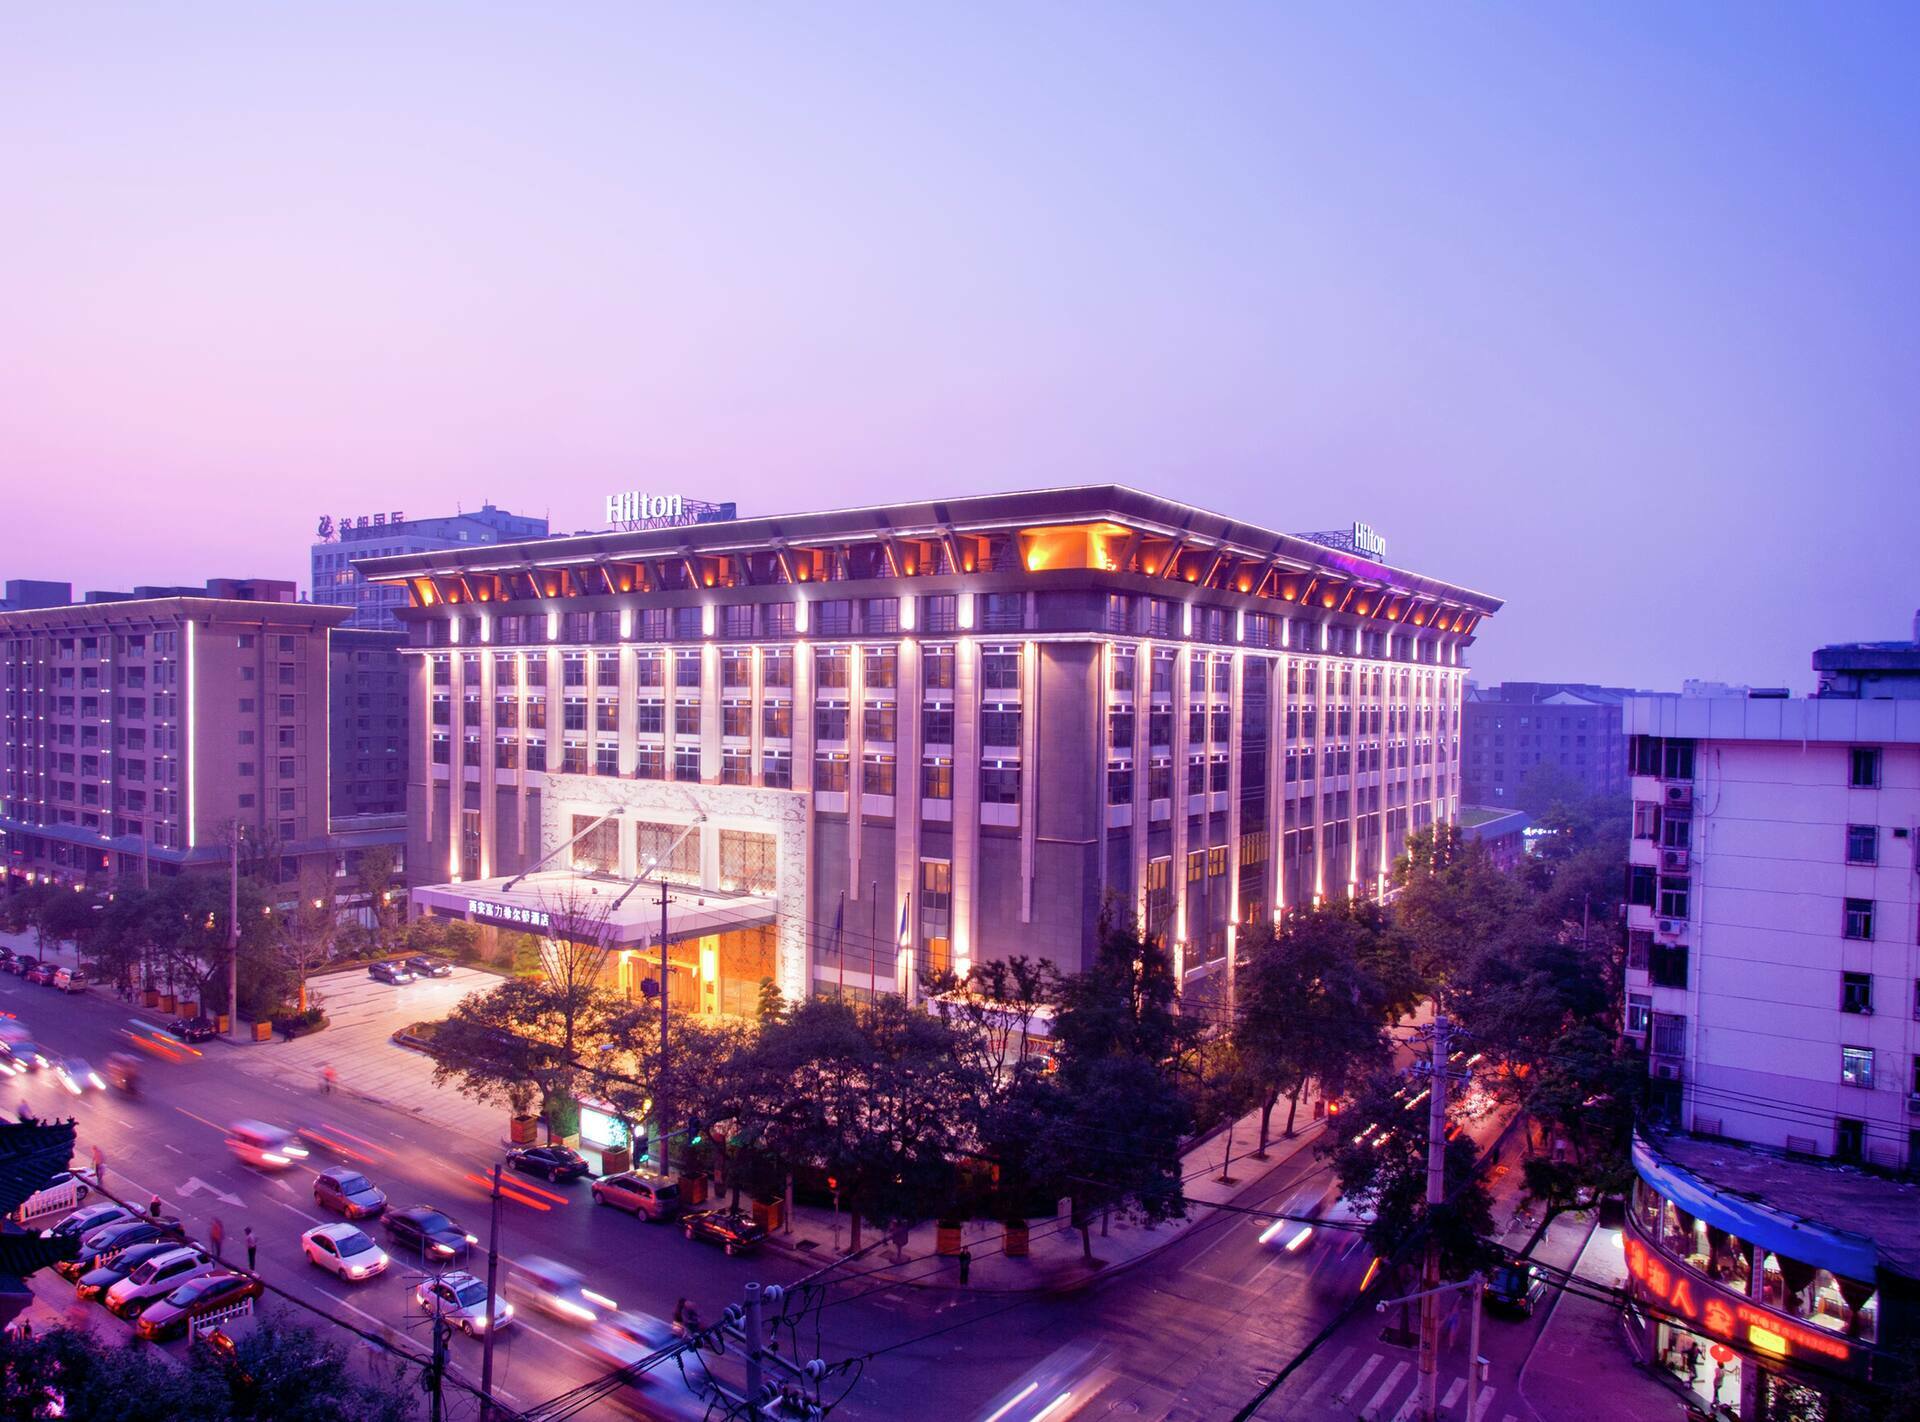 Photo of Hilton Xi'an, Xi'an, Xincheng District, China